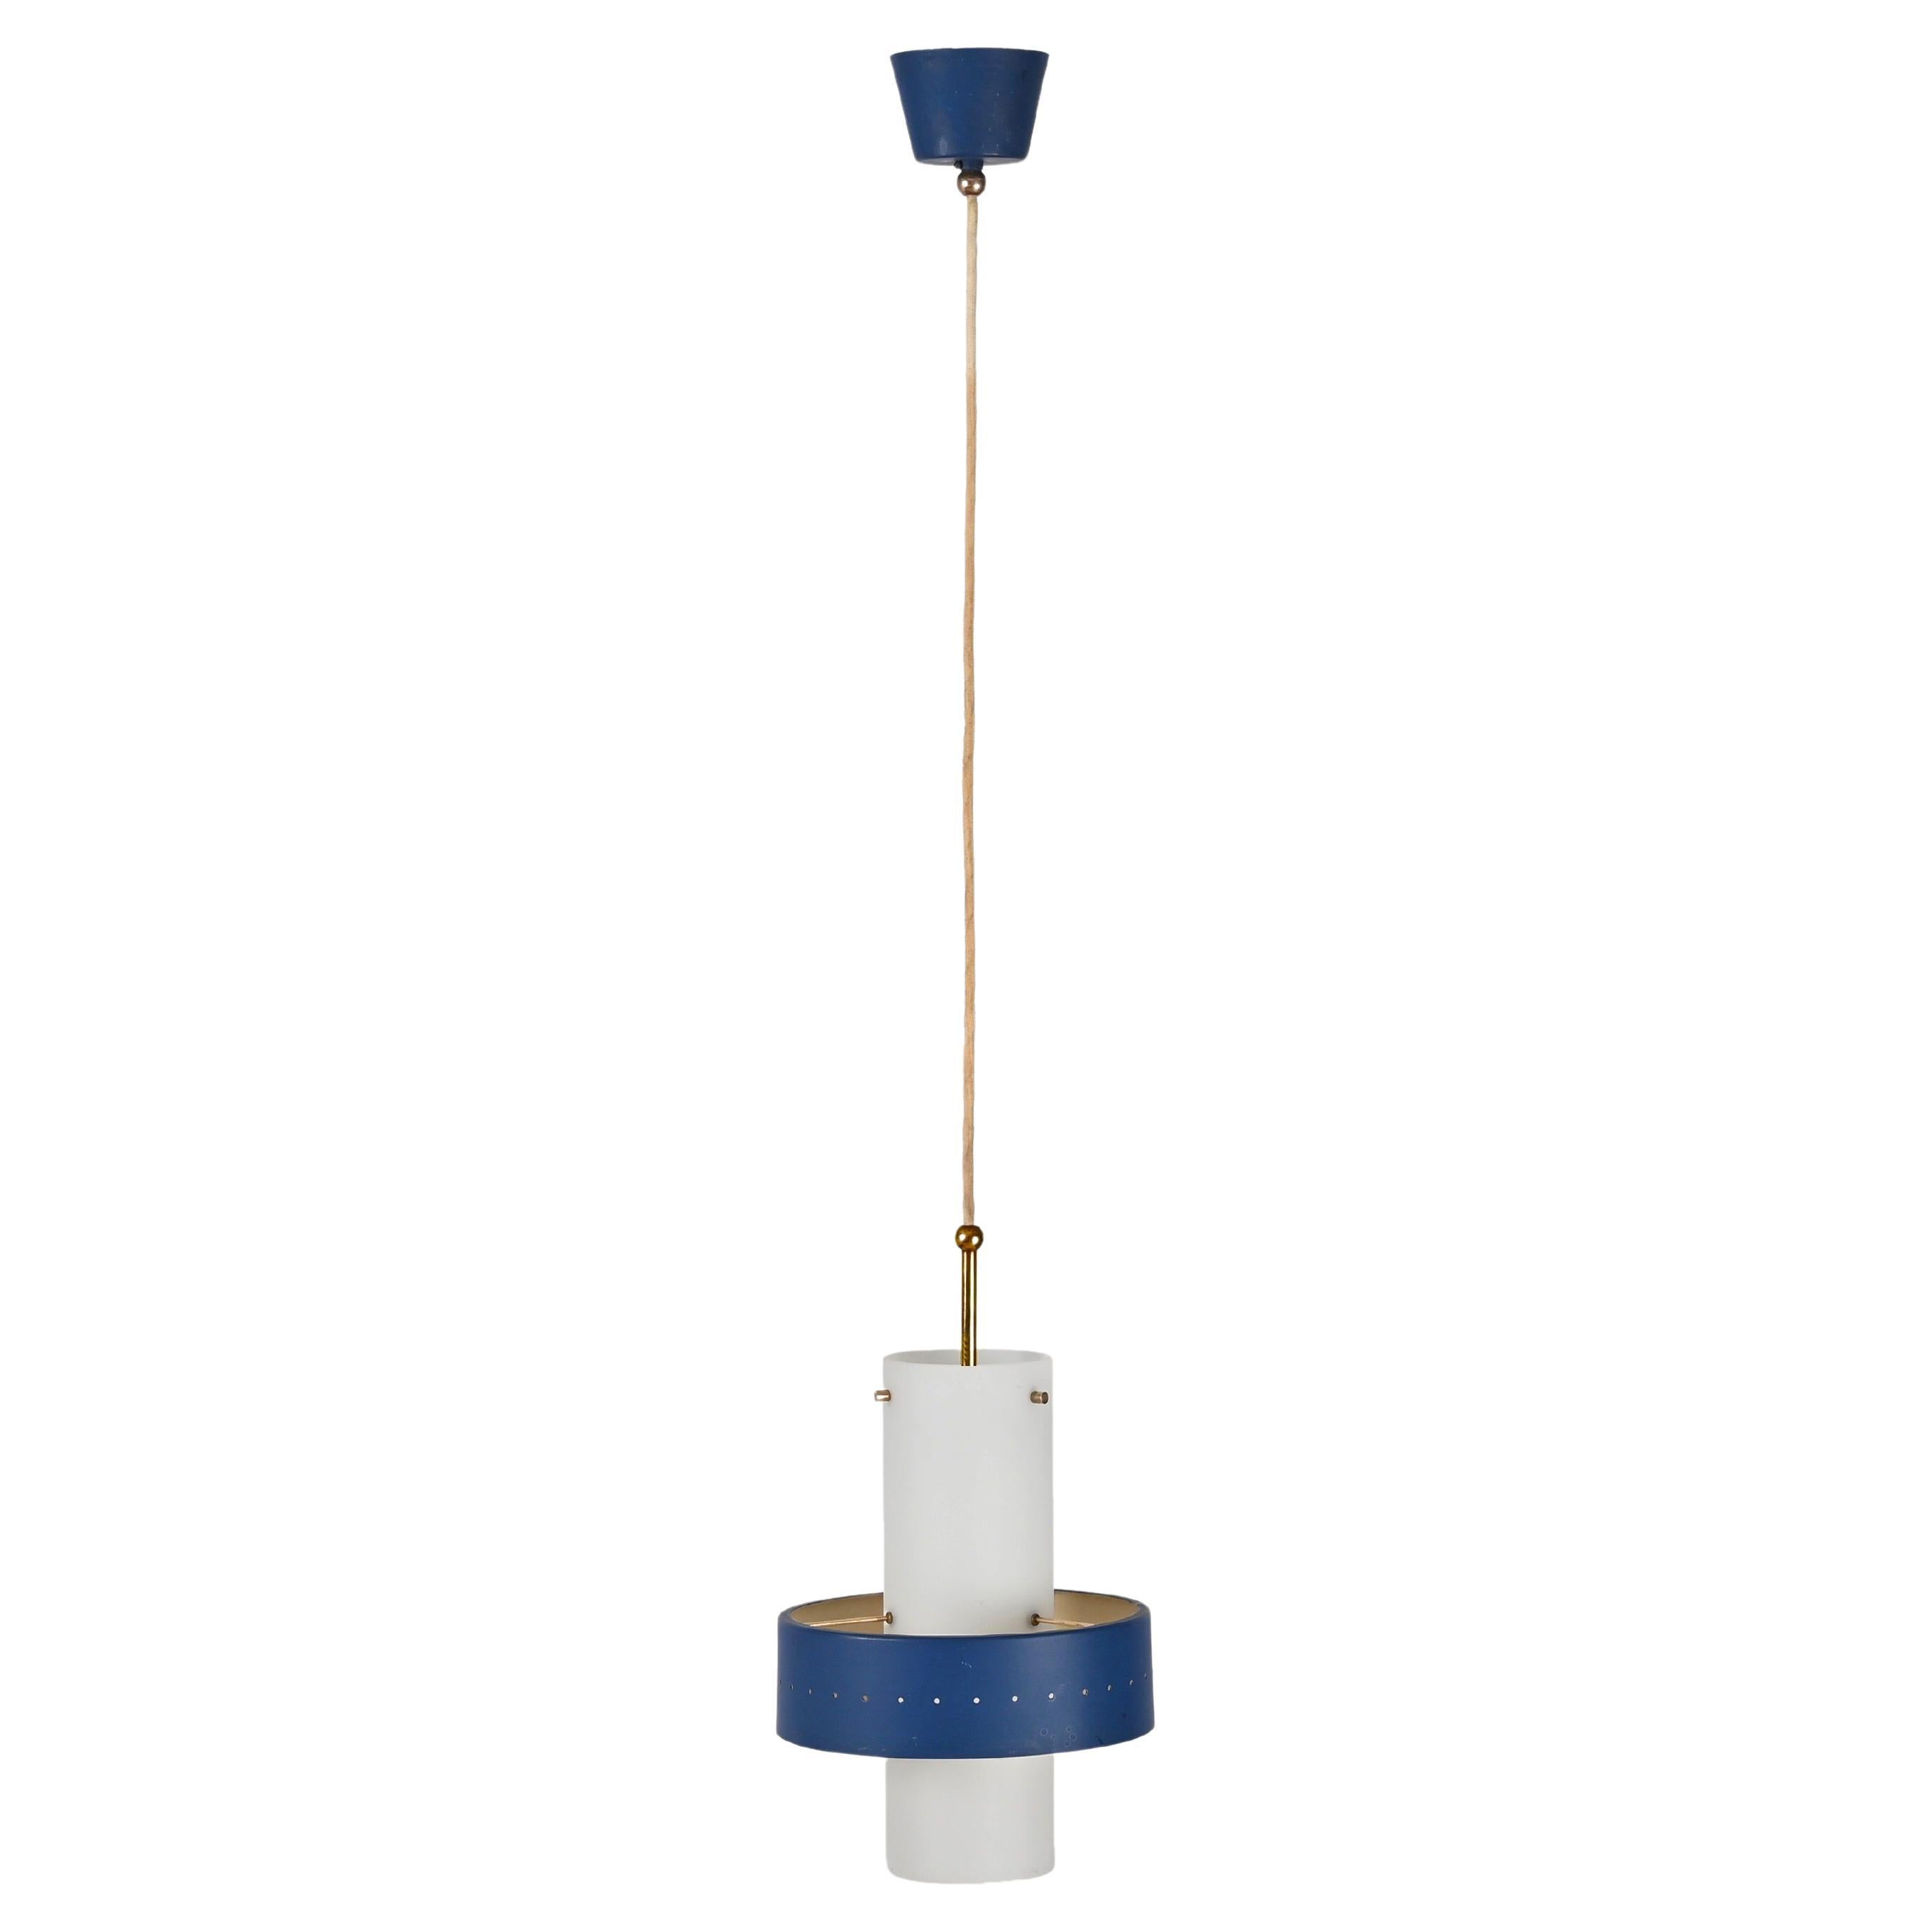 Stilnovo Opal Glass, Brass and Blue Metal Pendant Lamp, Italian Lighting 1950s For Sale